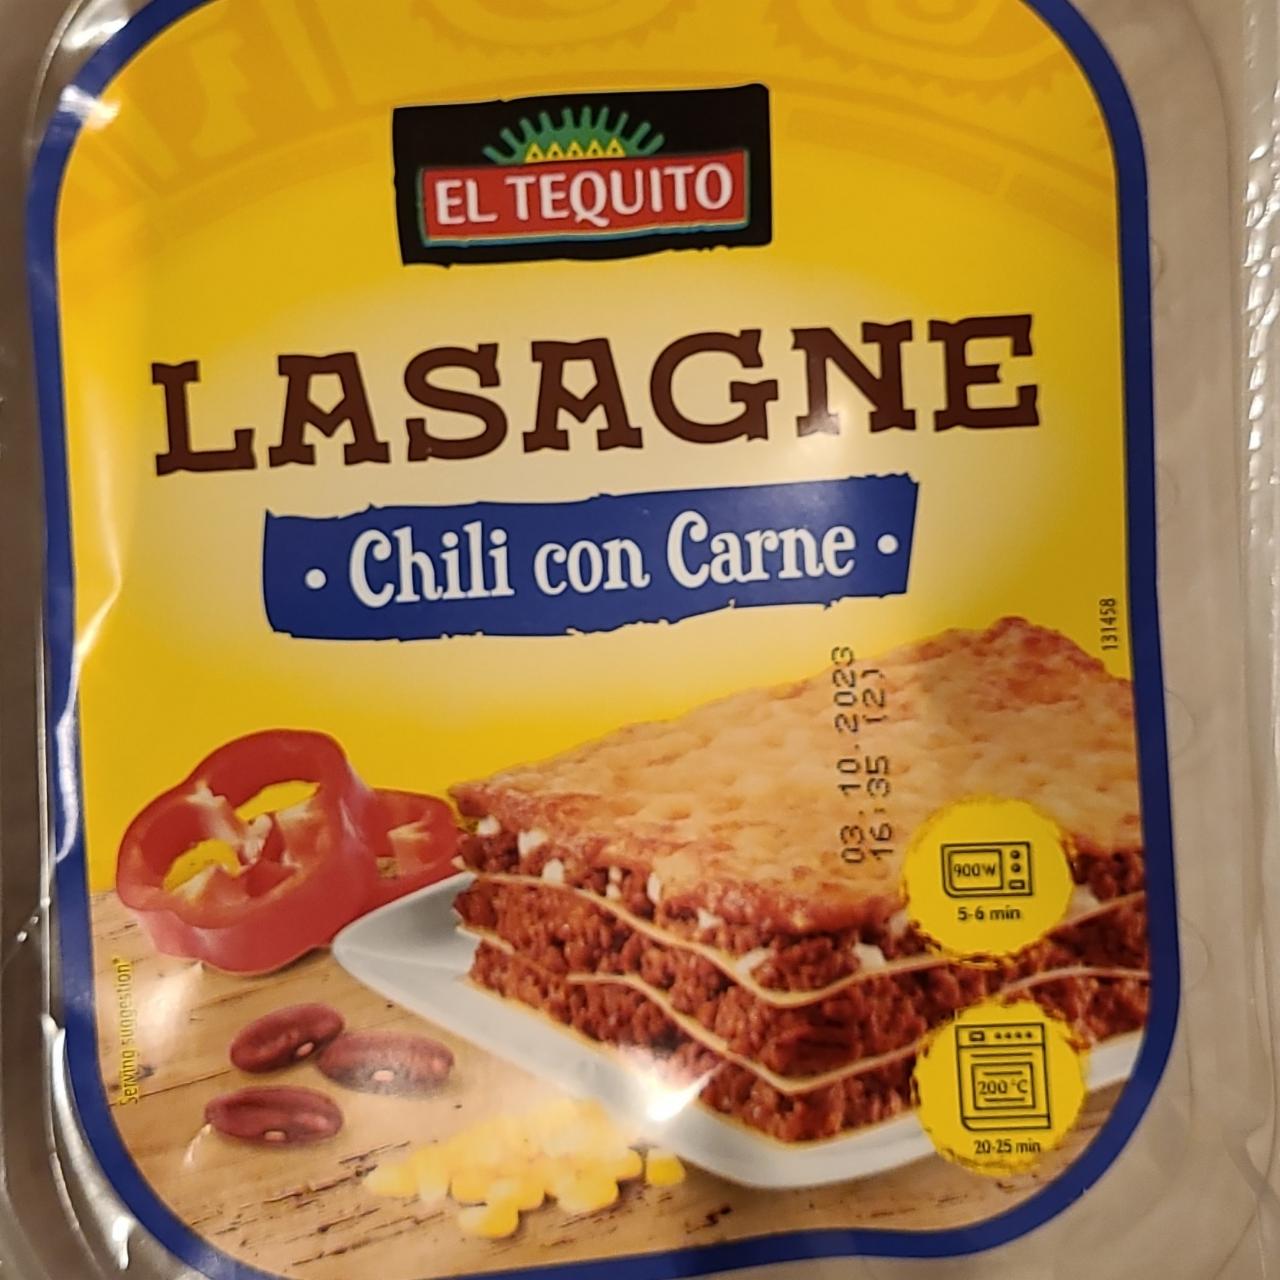 Zdjęcia - Lasagne Chili con Carne El Tequito